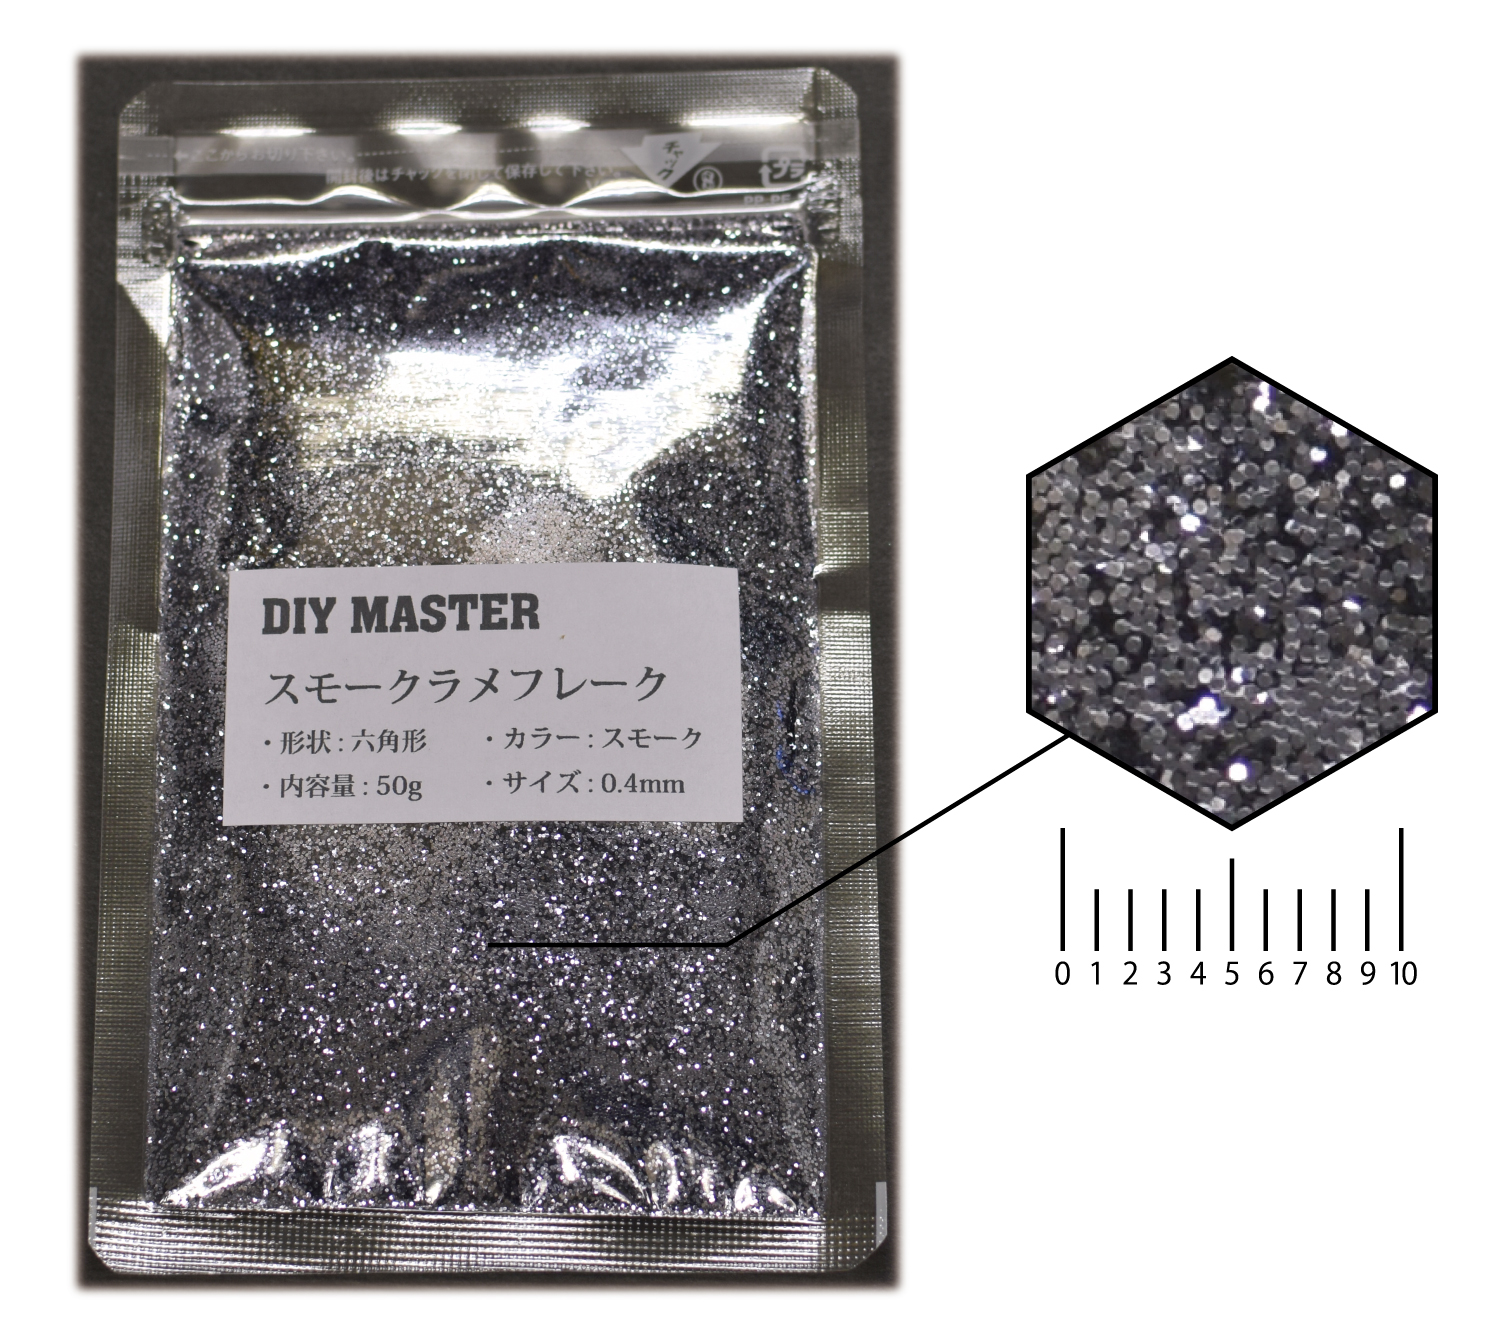 大人気新作 DIY MASTER 耐熱 (280℃) シルバー ラメ フレーク 1mm 500g (検 塗料 スプレー ラメパウダー 塗装用品 